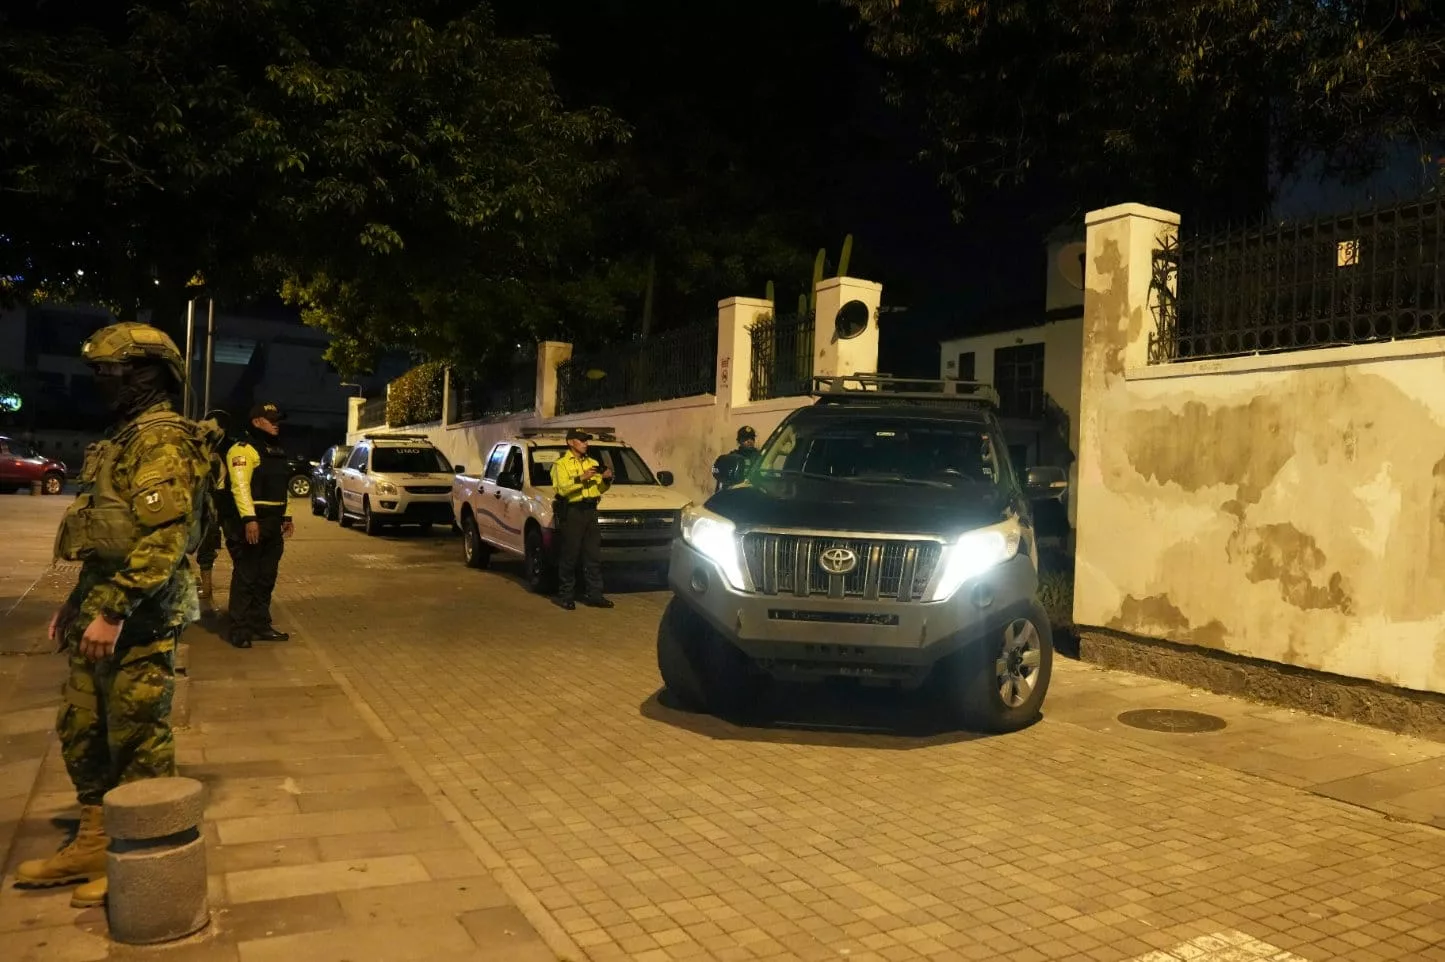 México rompe relaciones diplomáticas con Ecuador tras incidente en embajada